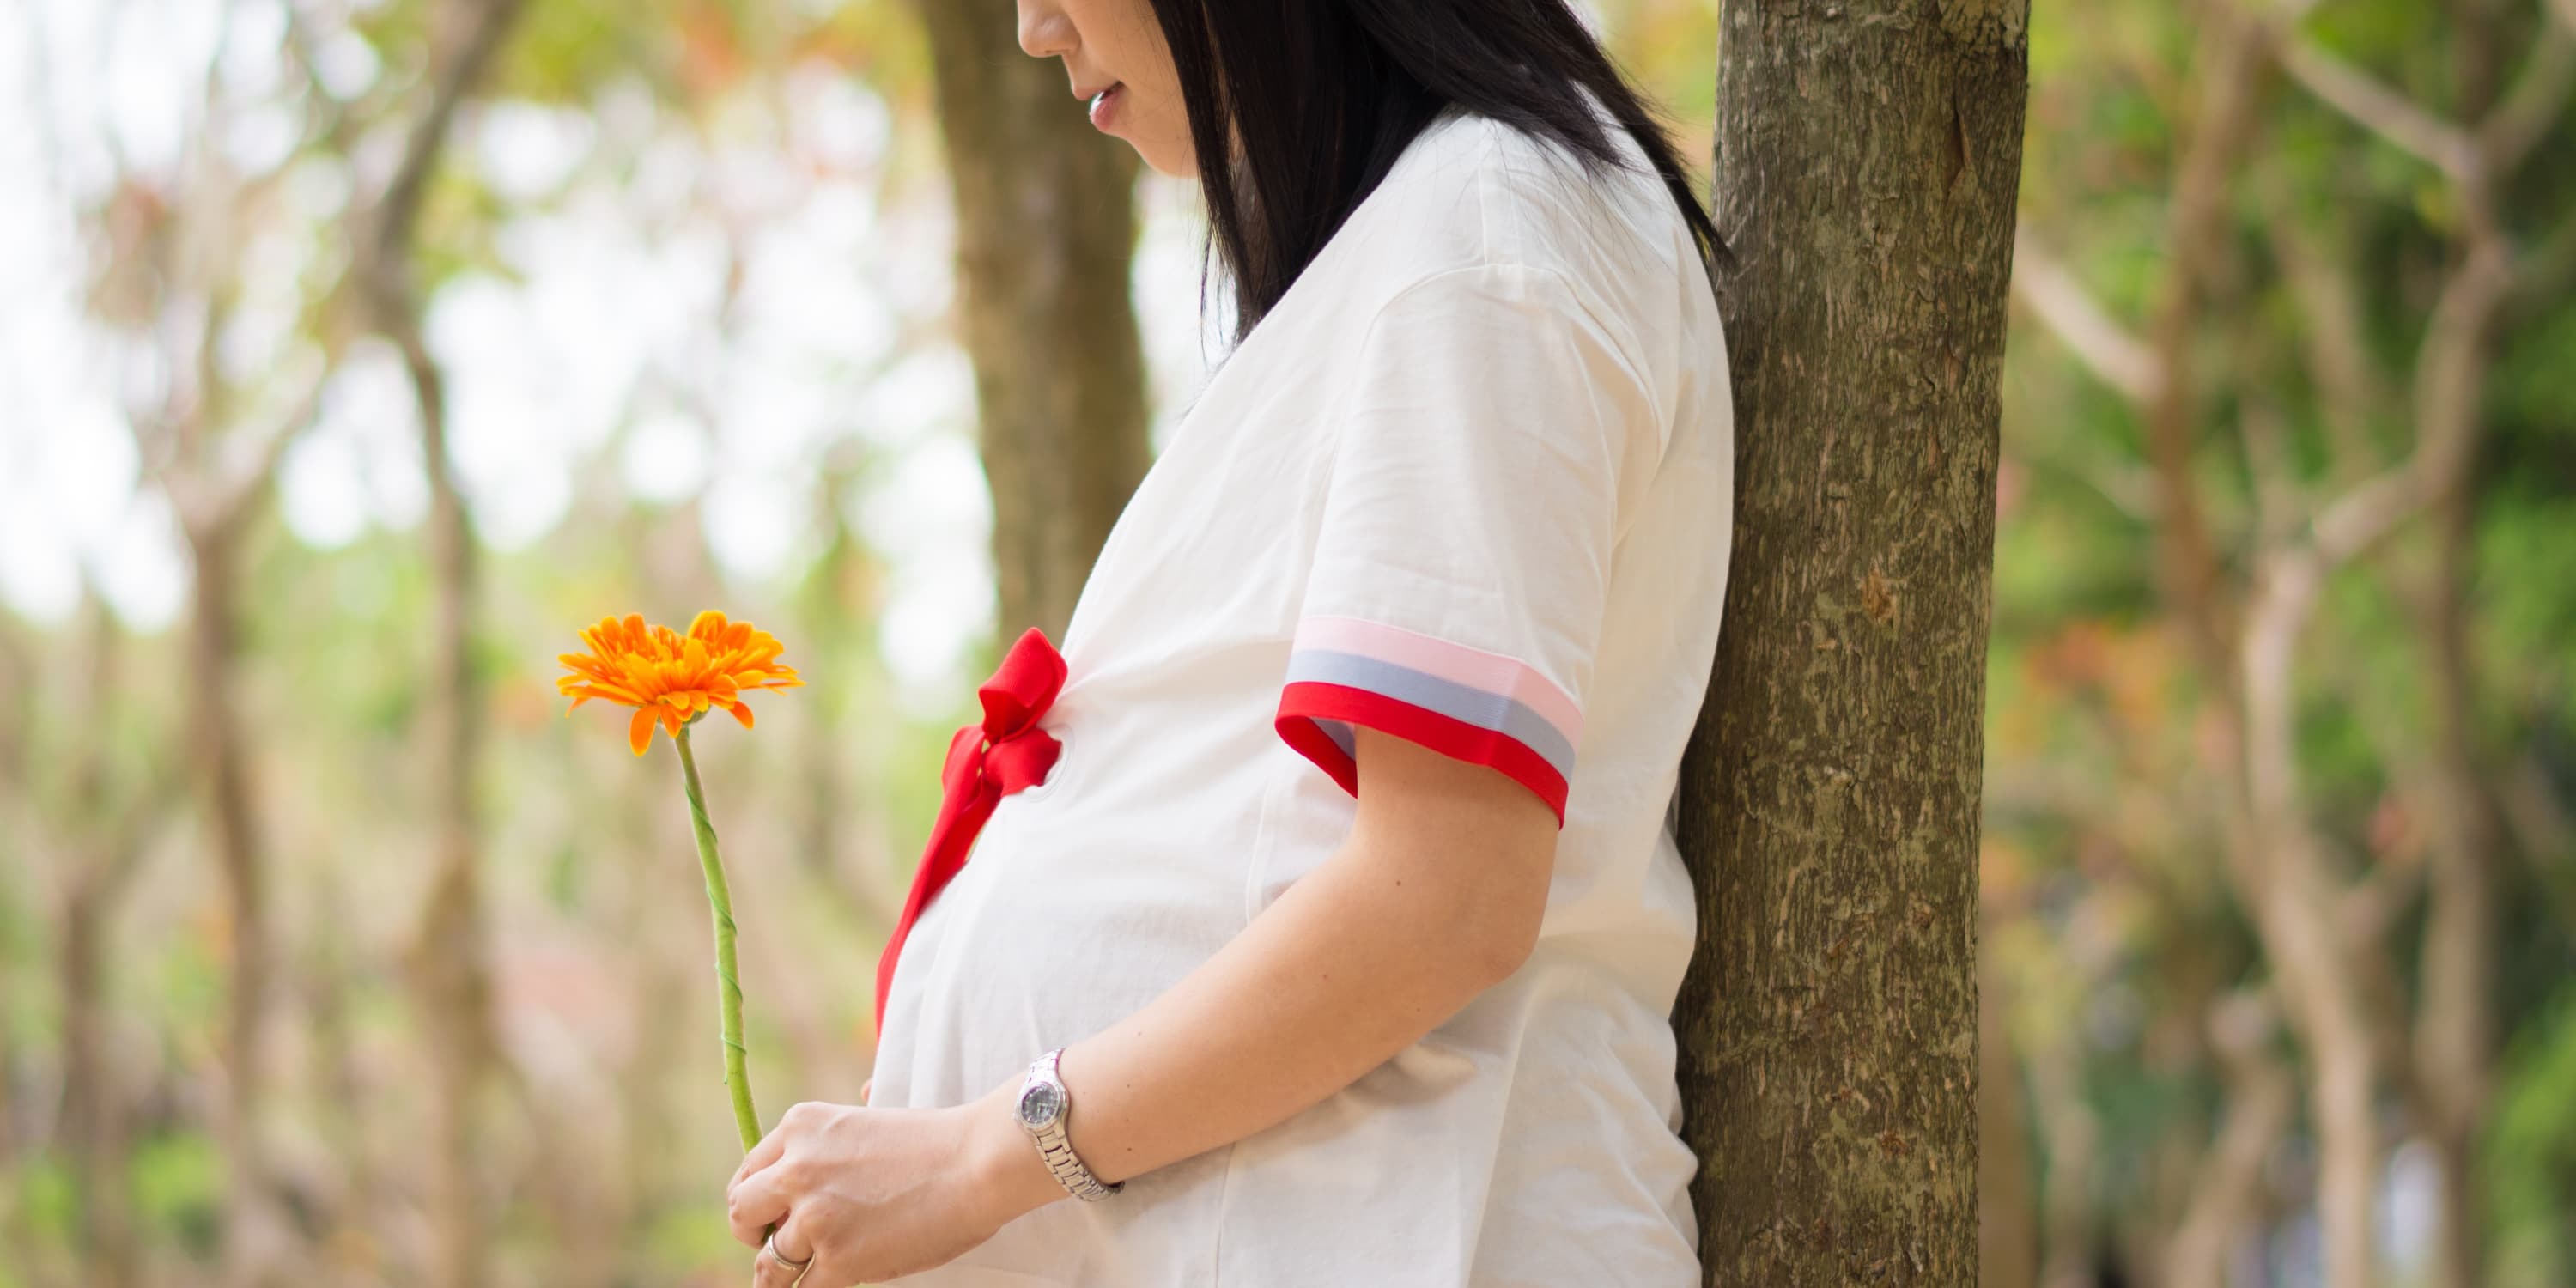 Vist fra siden: Gravid kvinde står under et træ og holder en blomst i hånden